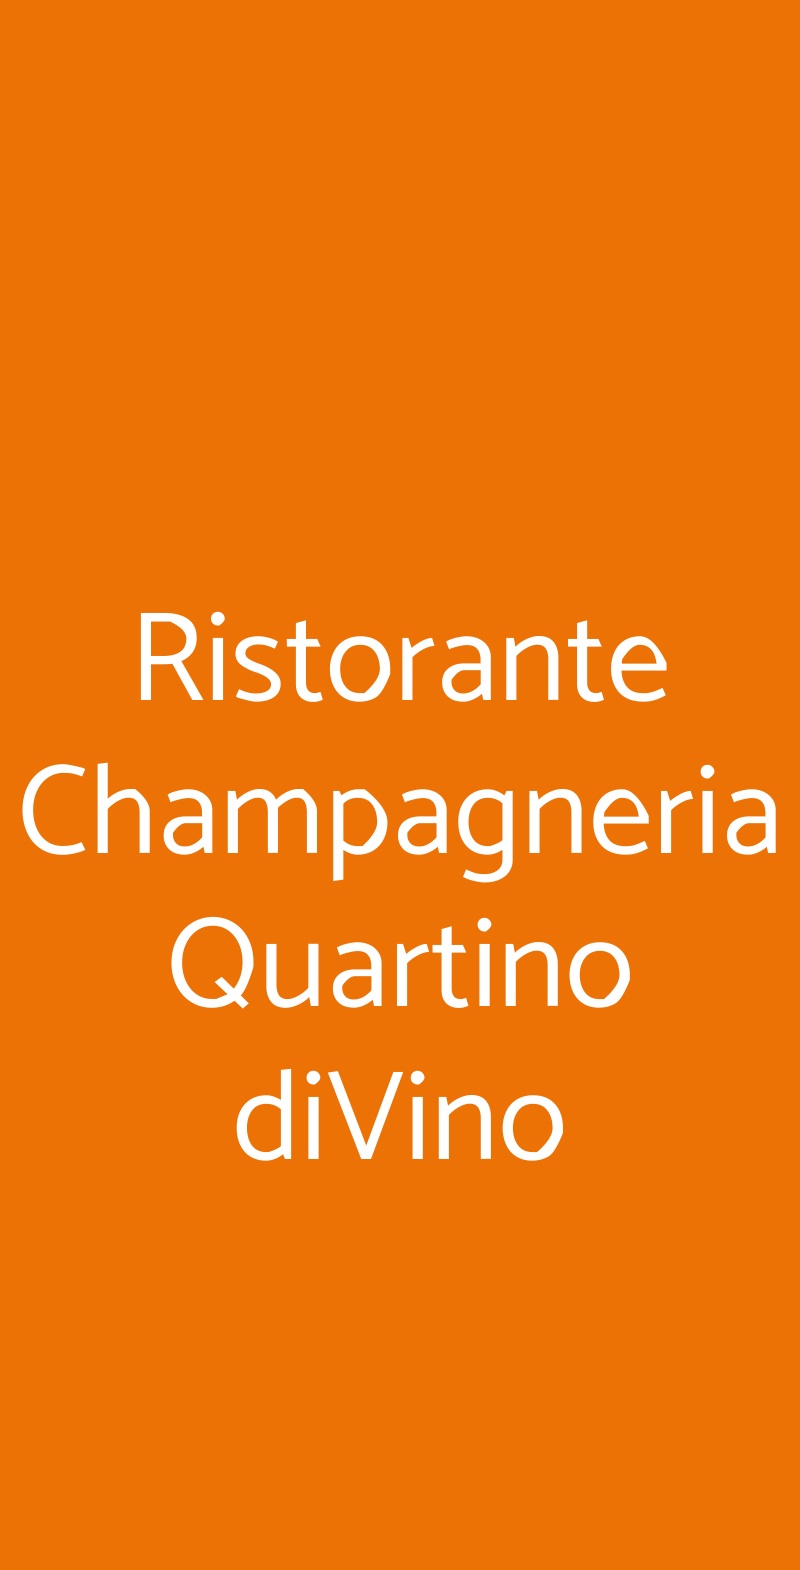 Ristorante Champagneria Quartino diVino Ovada menù 1 pagina